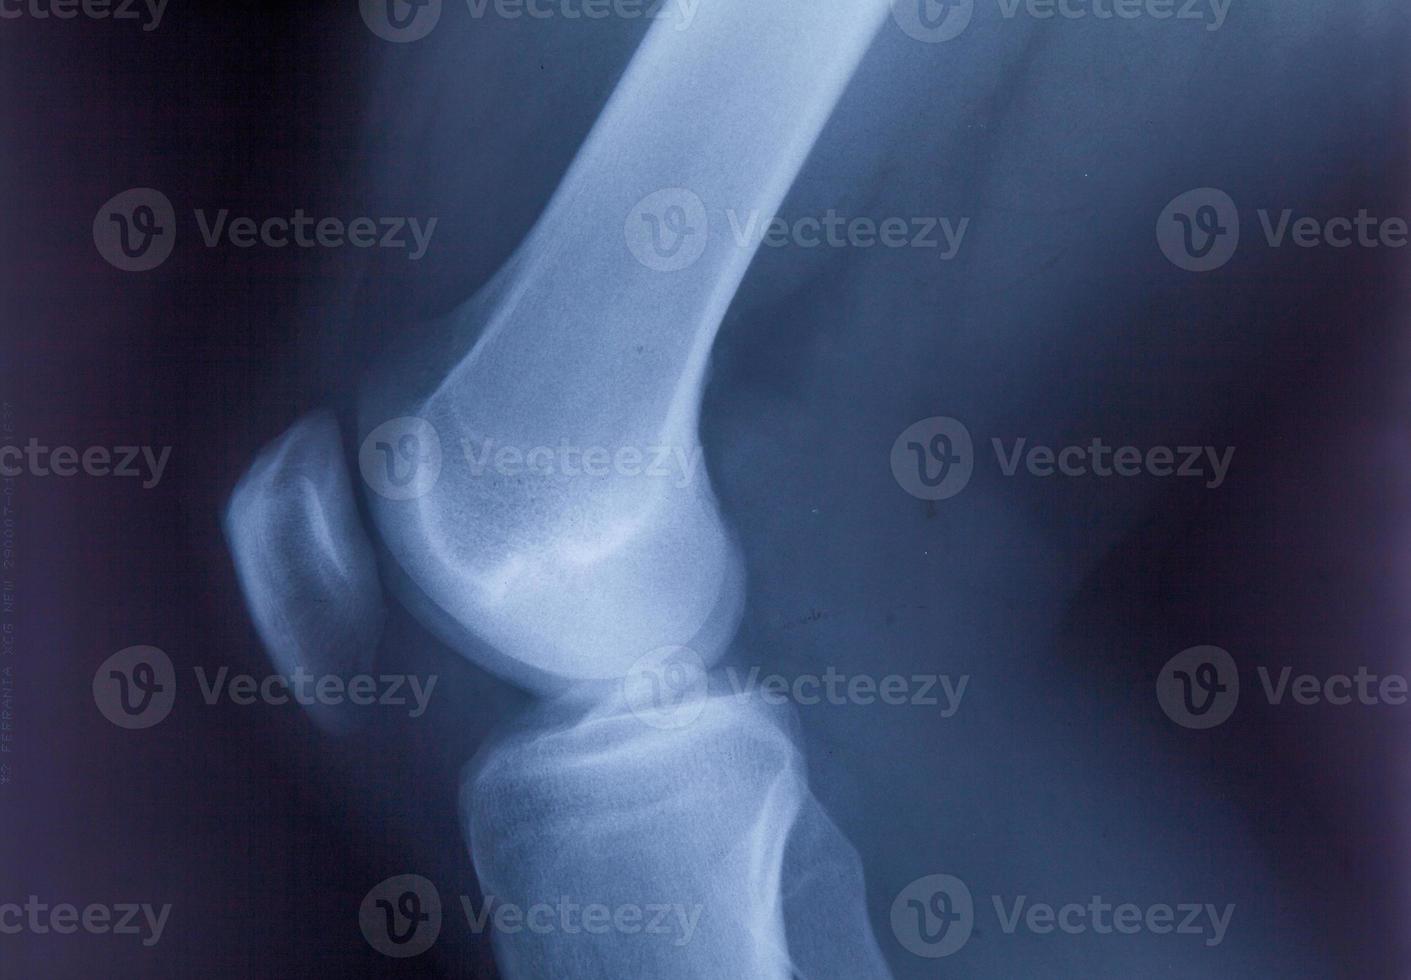 cheville pieds et genou douleur aux articulations film radiographique IRM photo